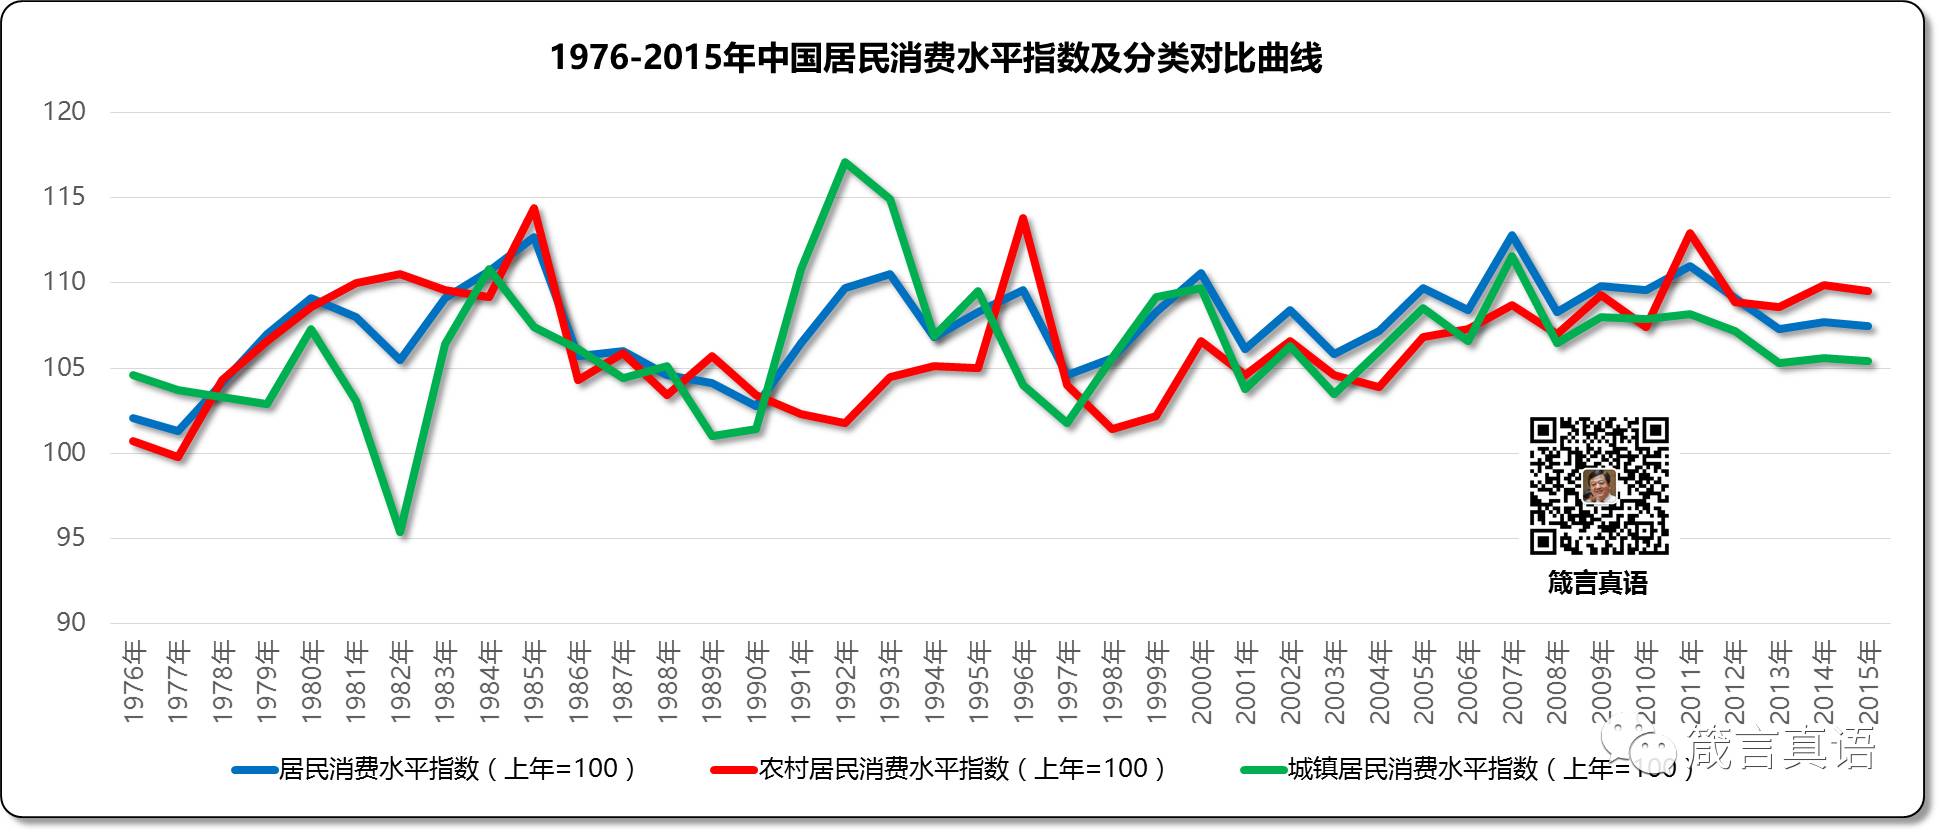 1976-2015年中国居民消费水平指数及分类对比曲线